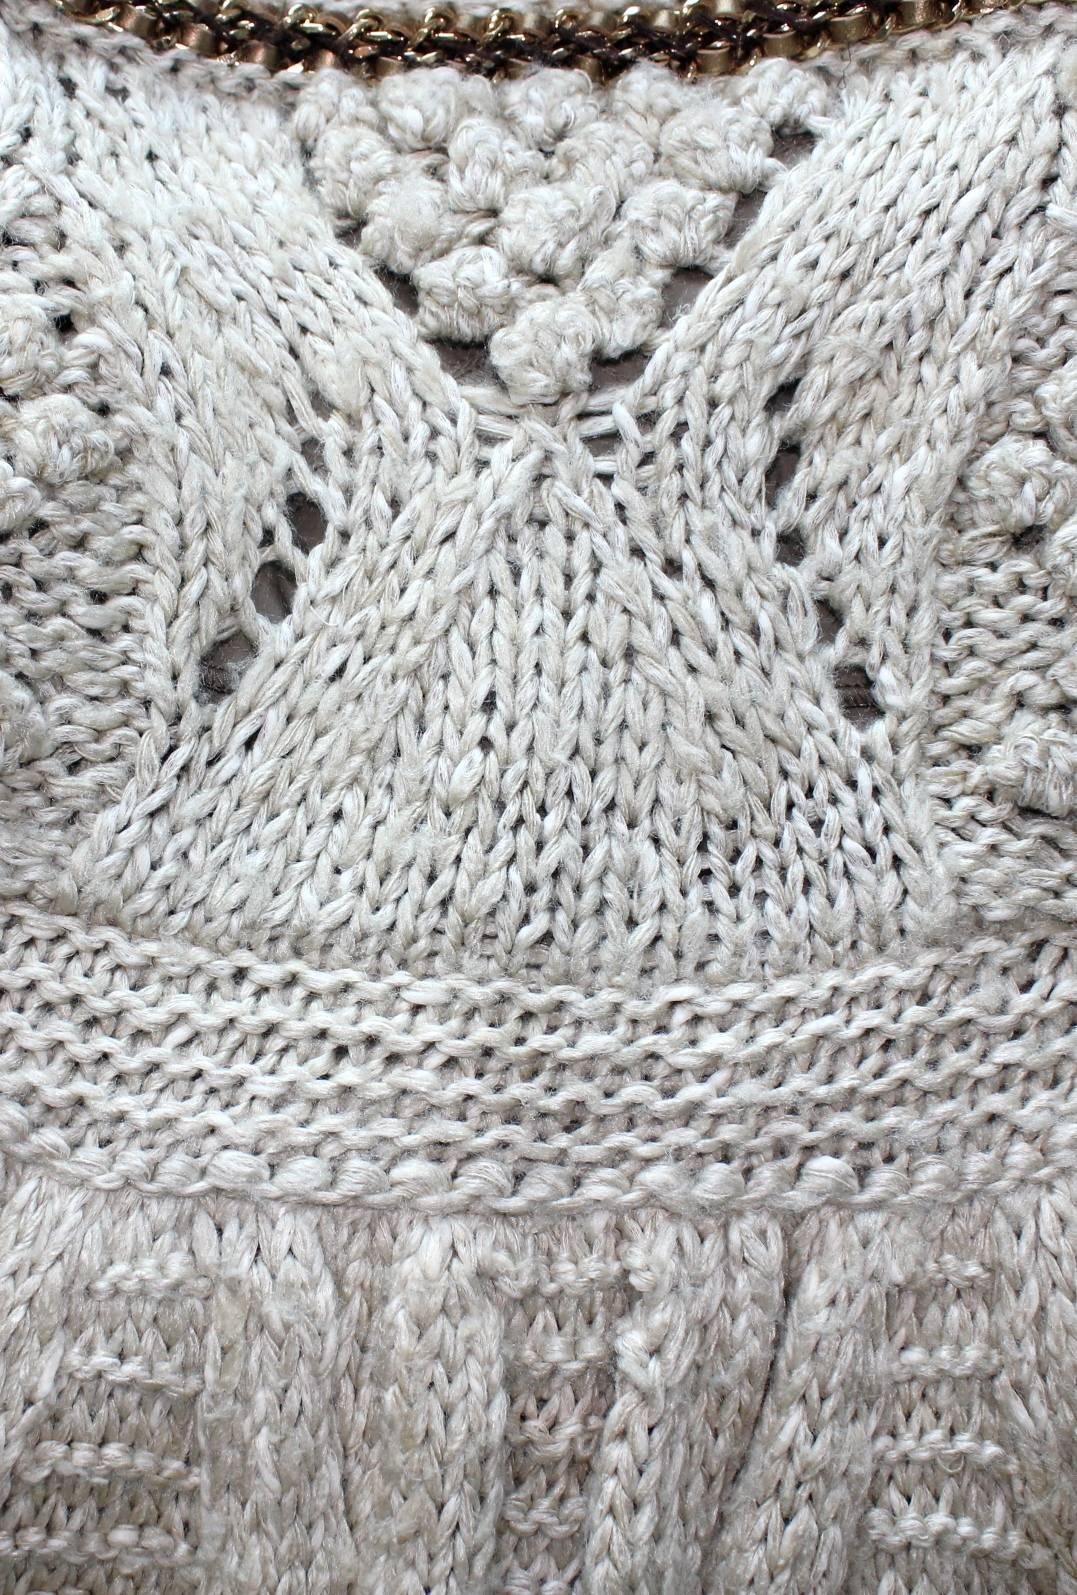 Beige CHANEL Signature Melange Crochet Knit Dress Chain Braids Leather Details 36